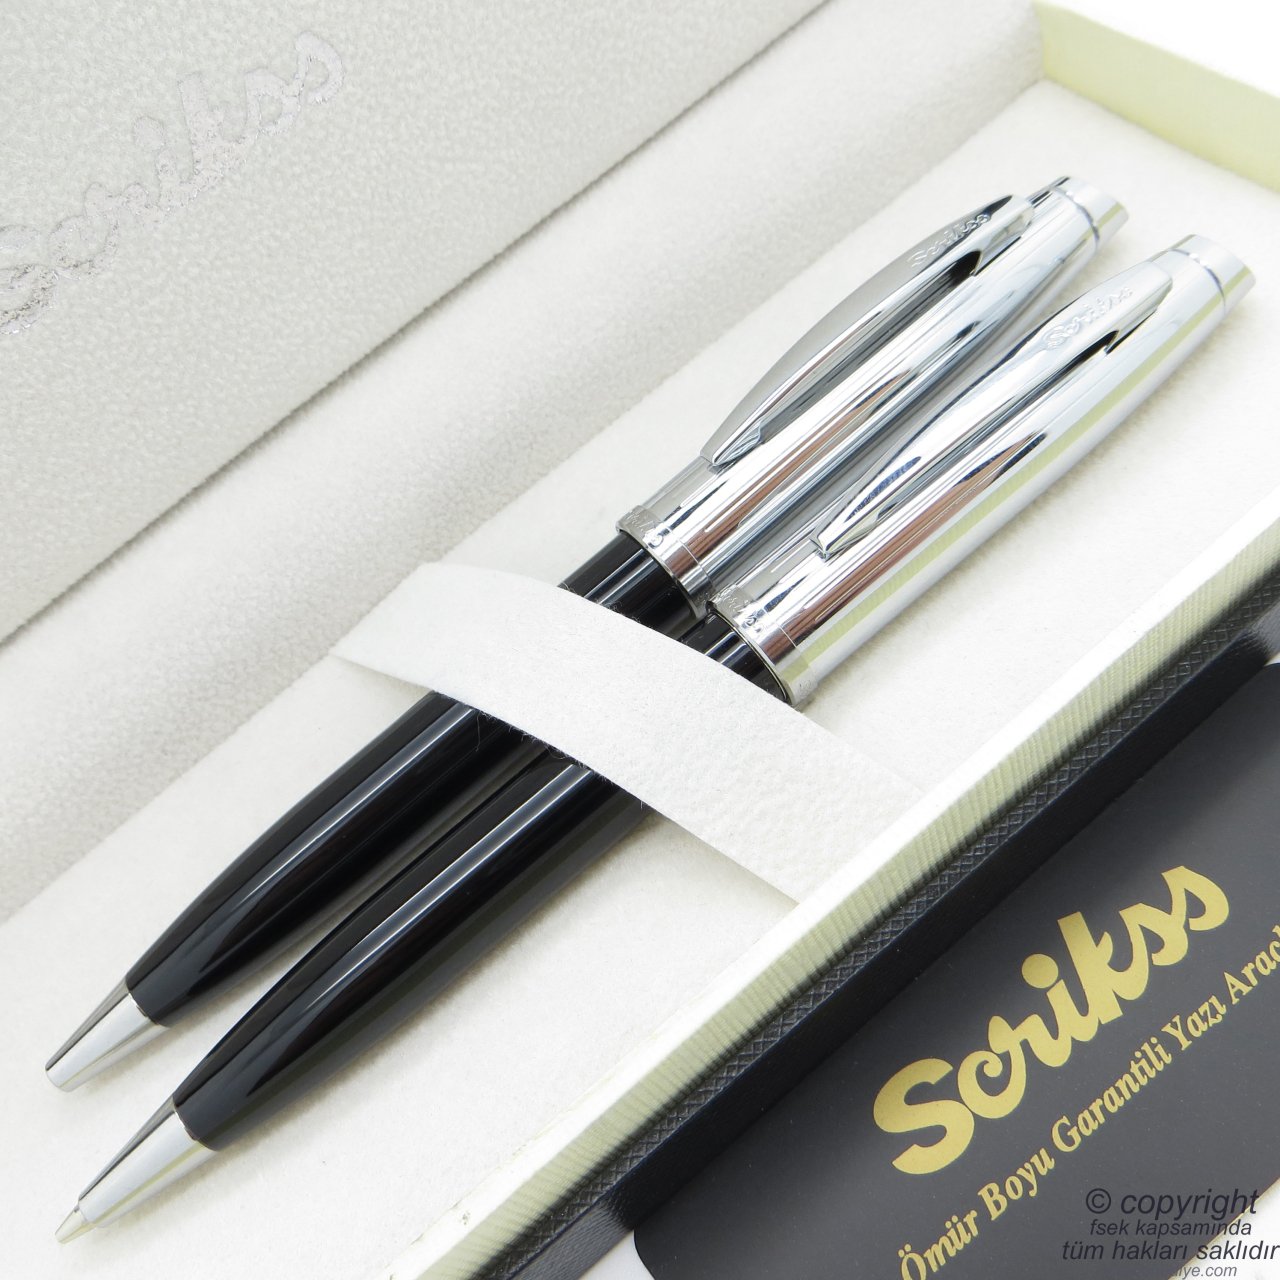 Scrikss 39 Siyah Krom Tükenmez Kalem + Versatil Kalem Set | Scrikss Kalem | İsme Özel Kalem | Hediyelik Kalem